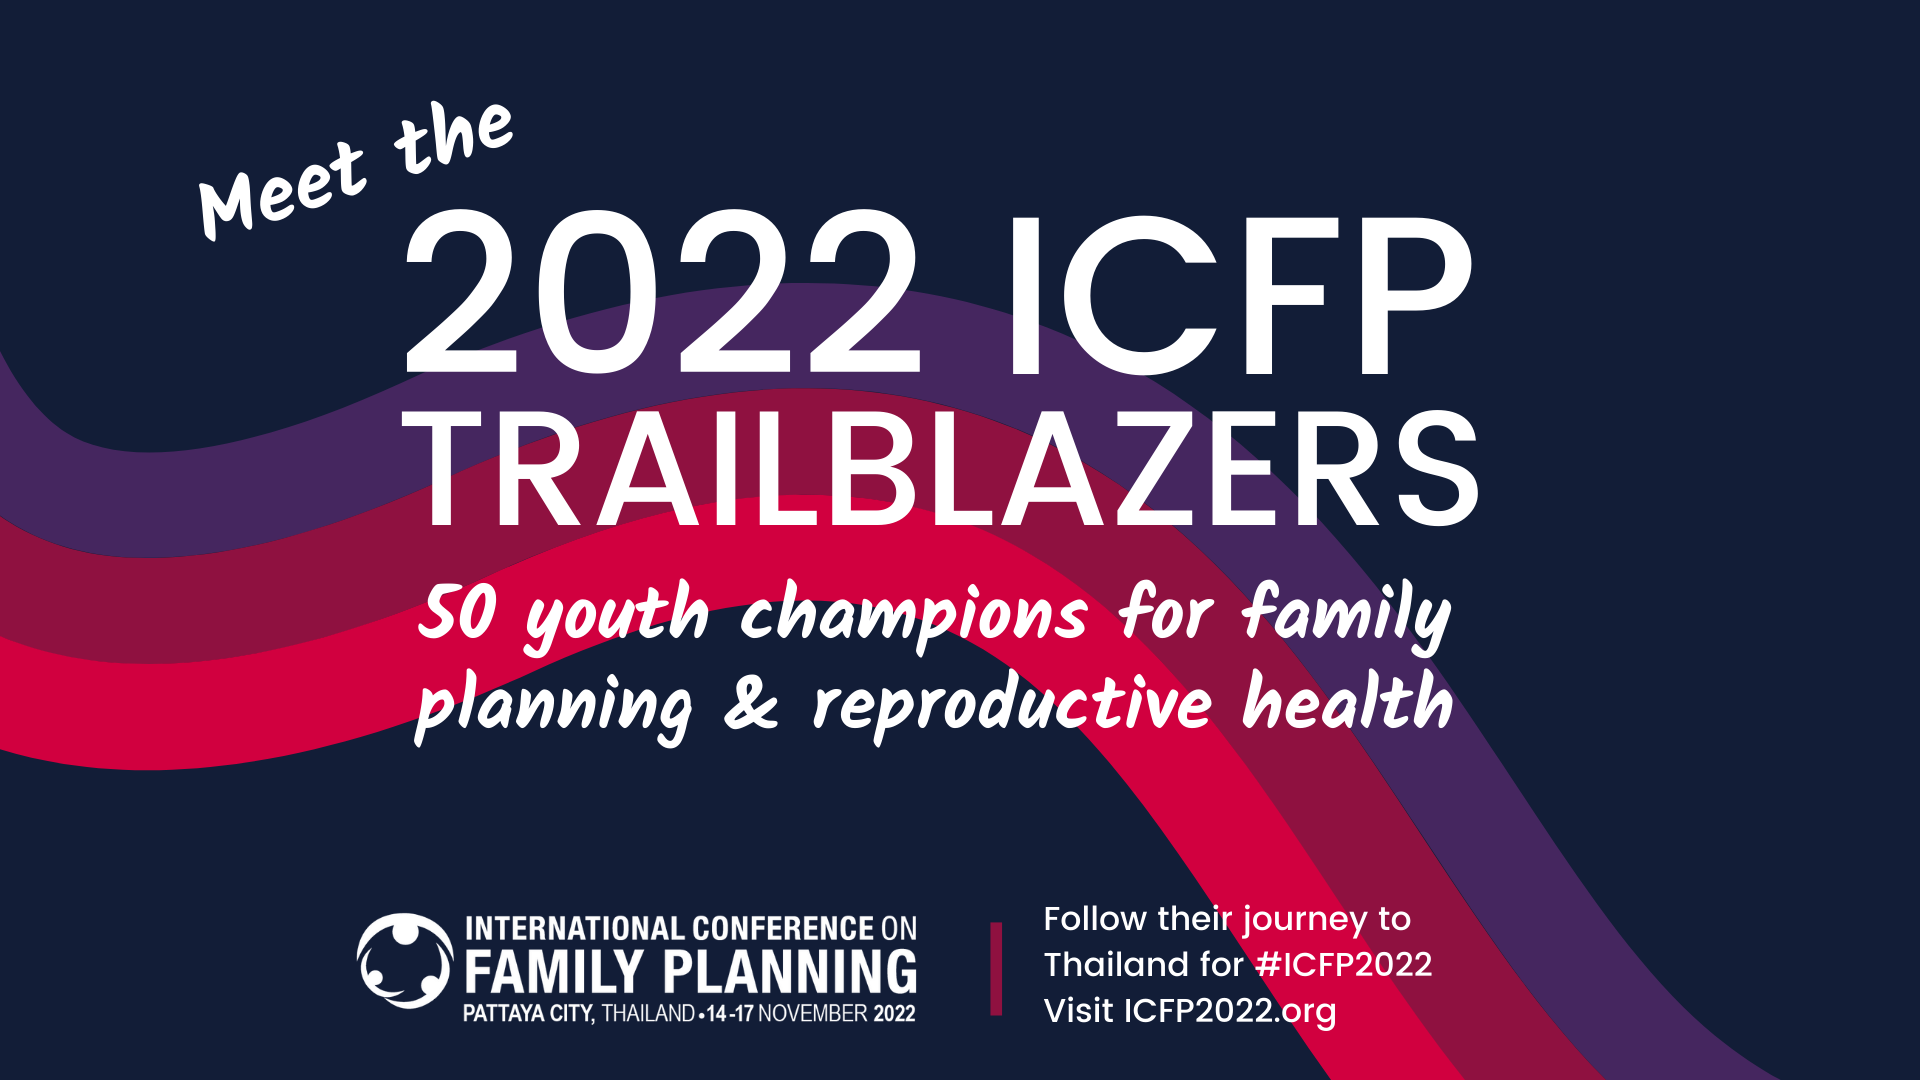 White text on dark blur background "Meet the 2022 ICFP Youth Trailblazers"